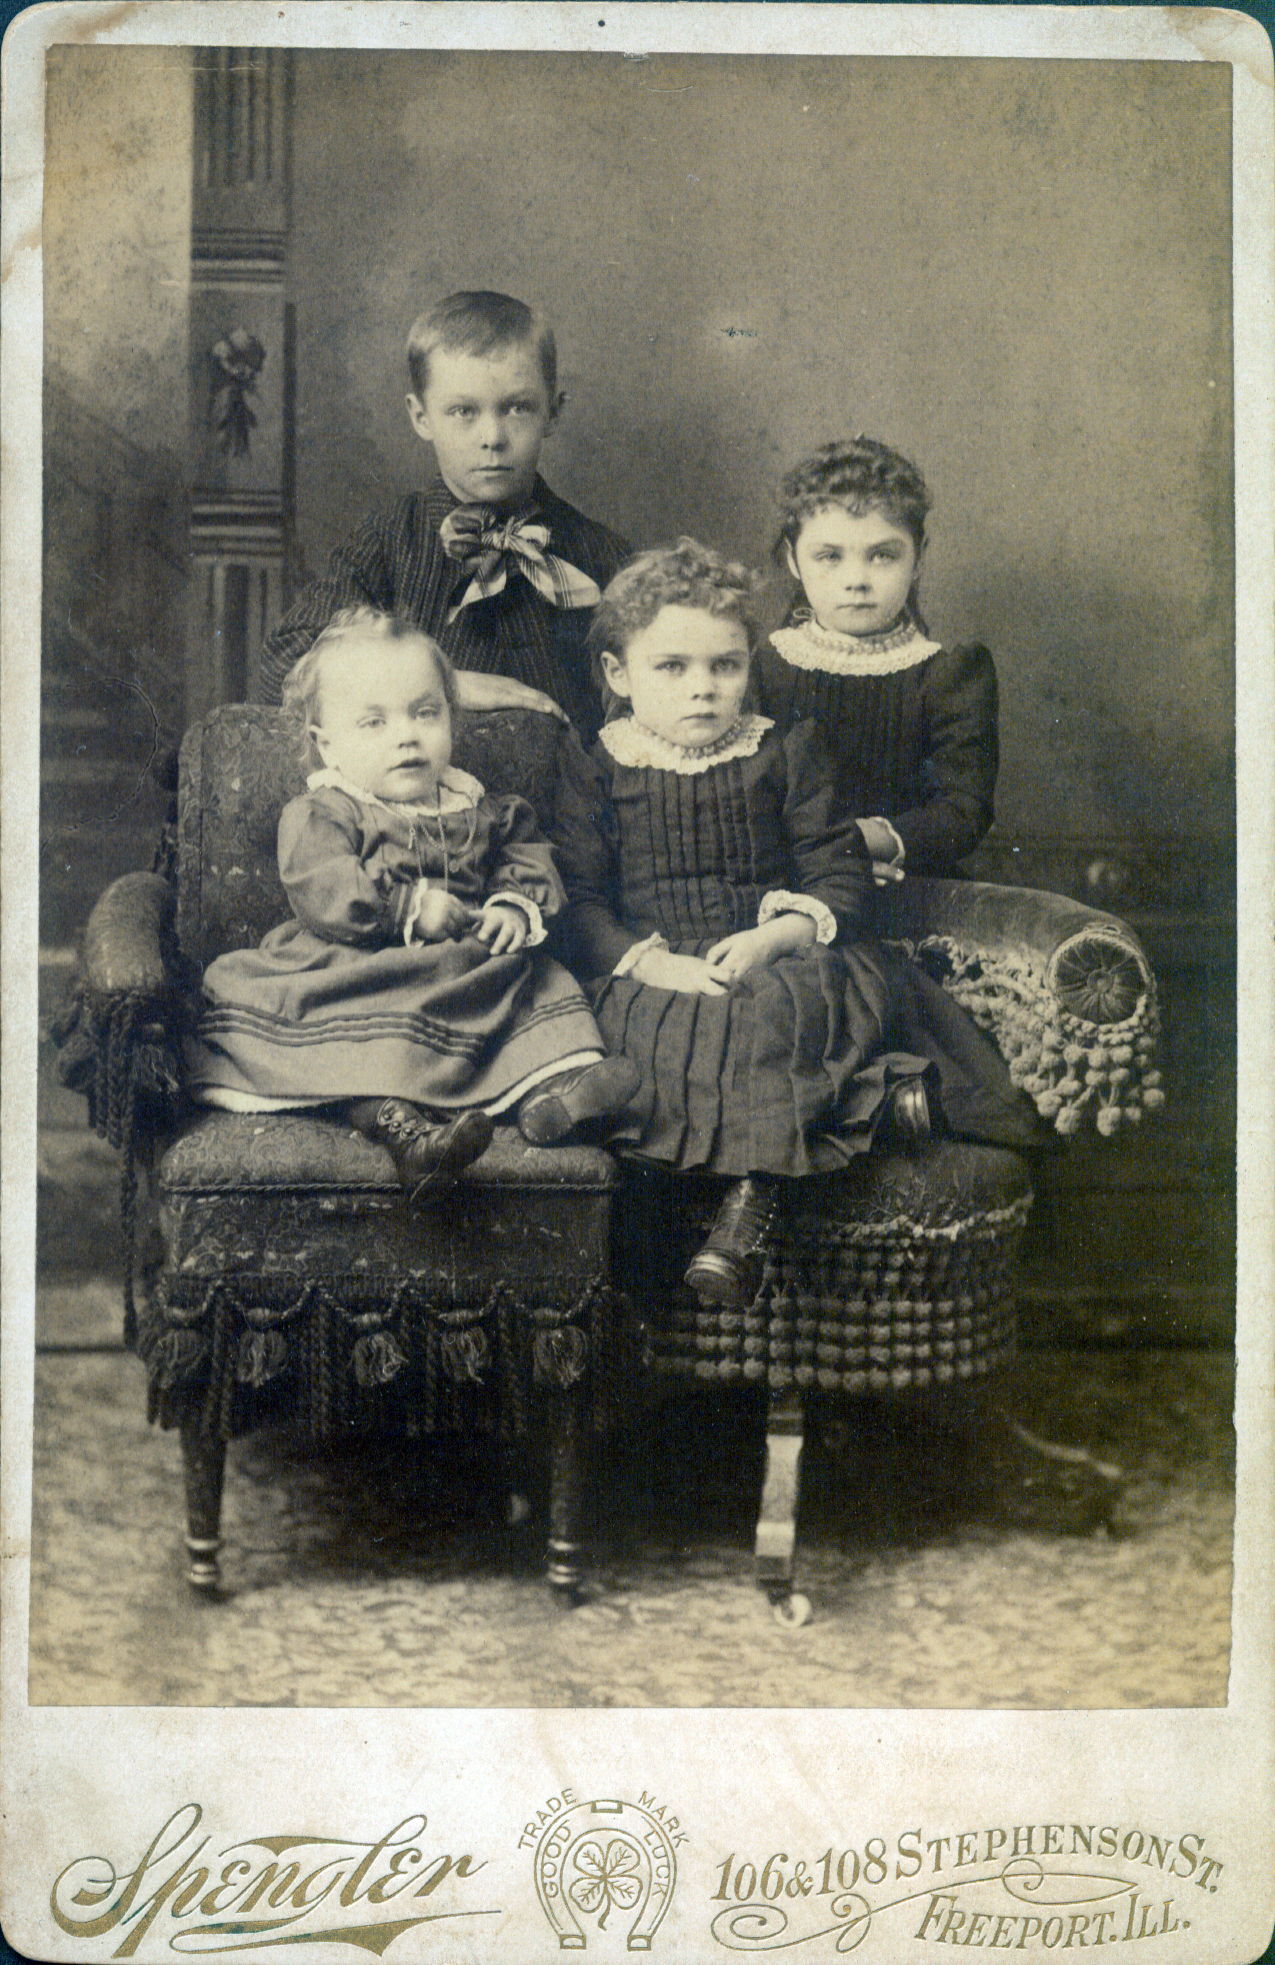 a black and white po shows five children